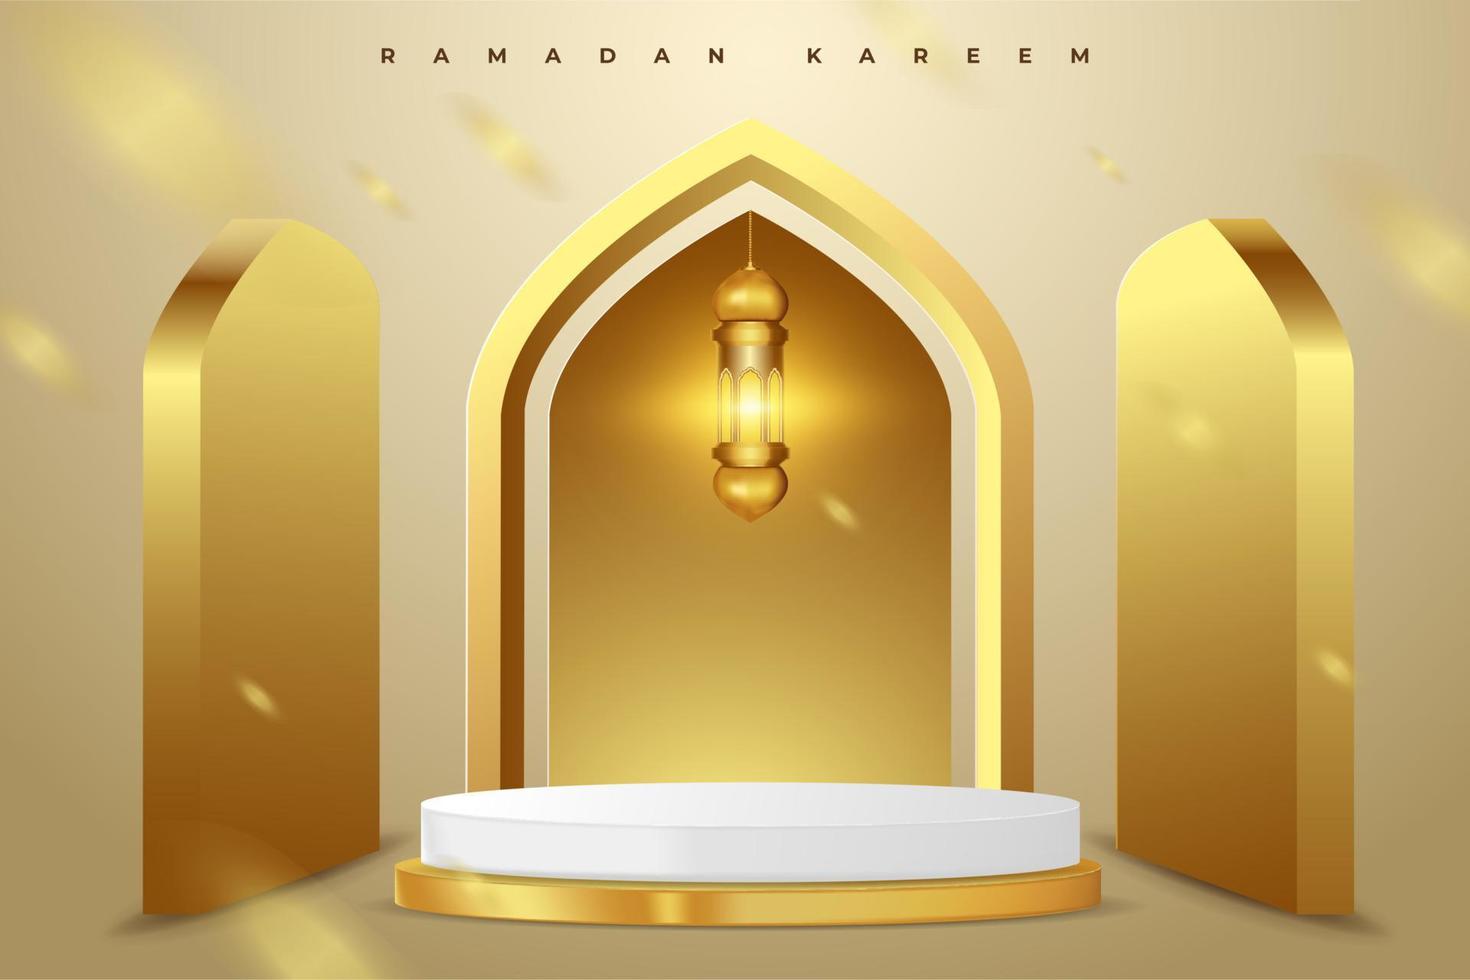 Fondo de tarjeta de felicitación ramadan kareem con ilustración de vector de ornamento islámico